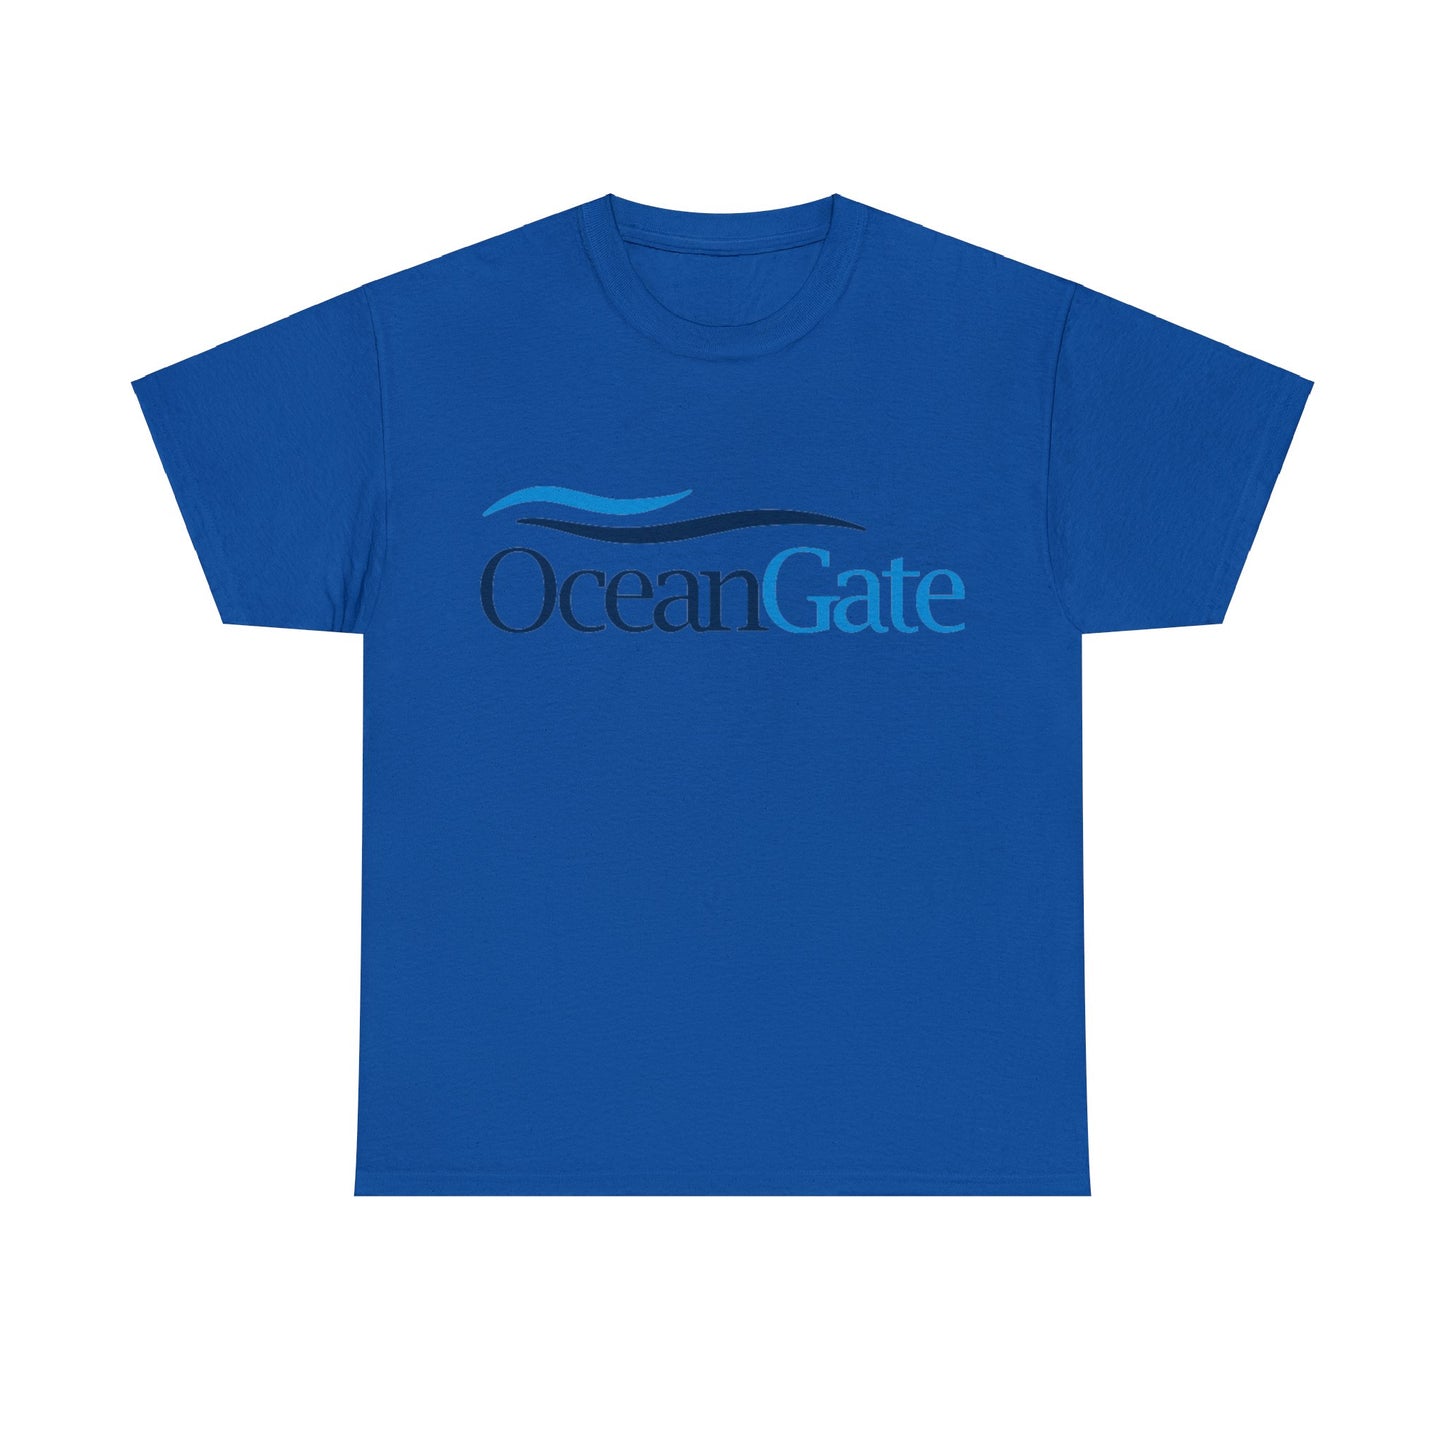 OceanGate Tee Royal